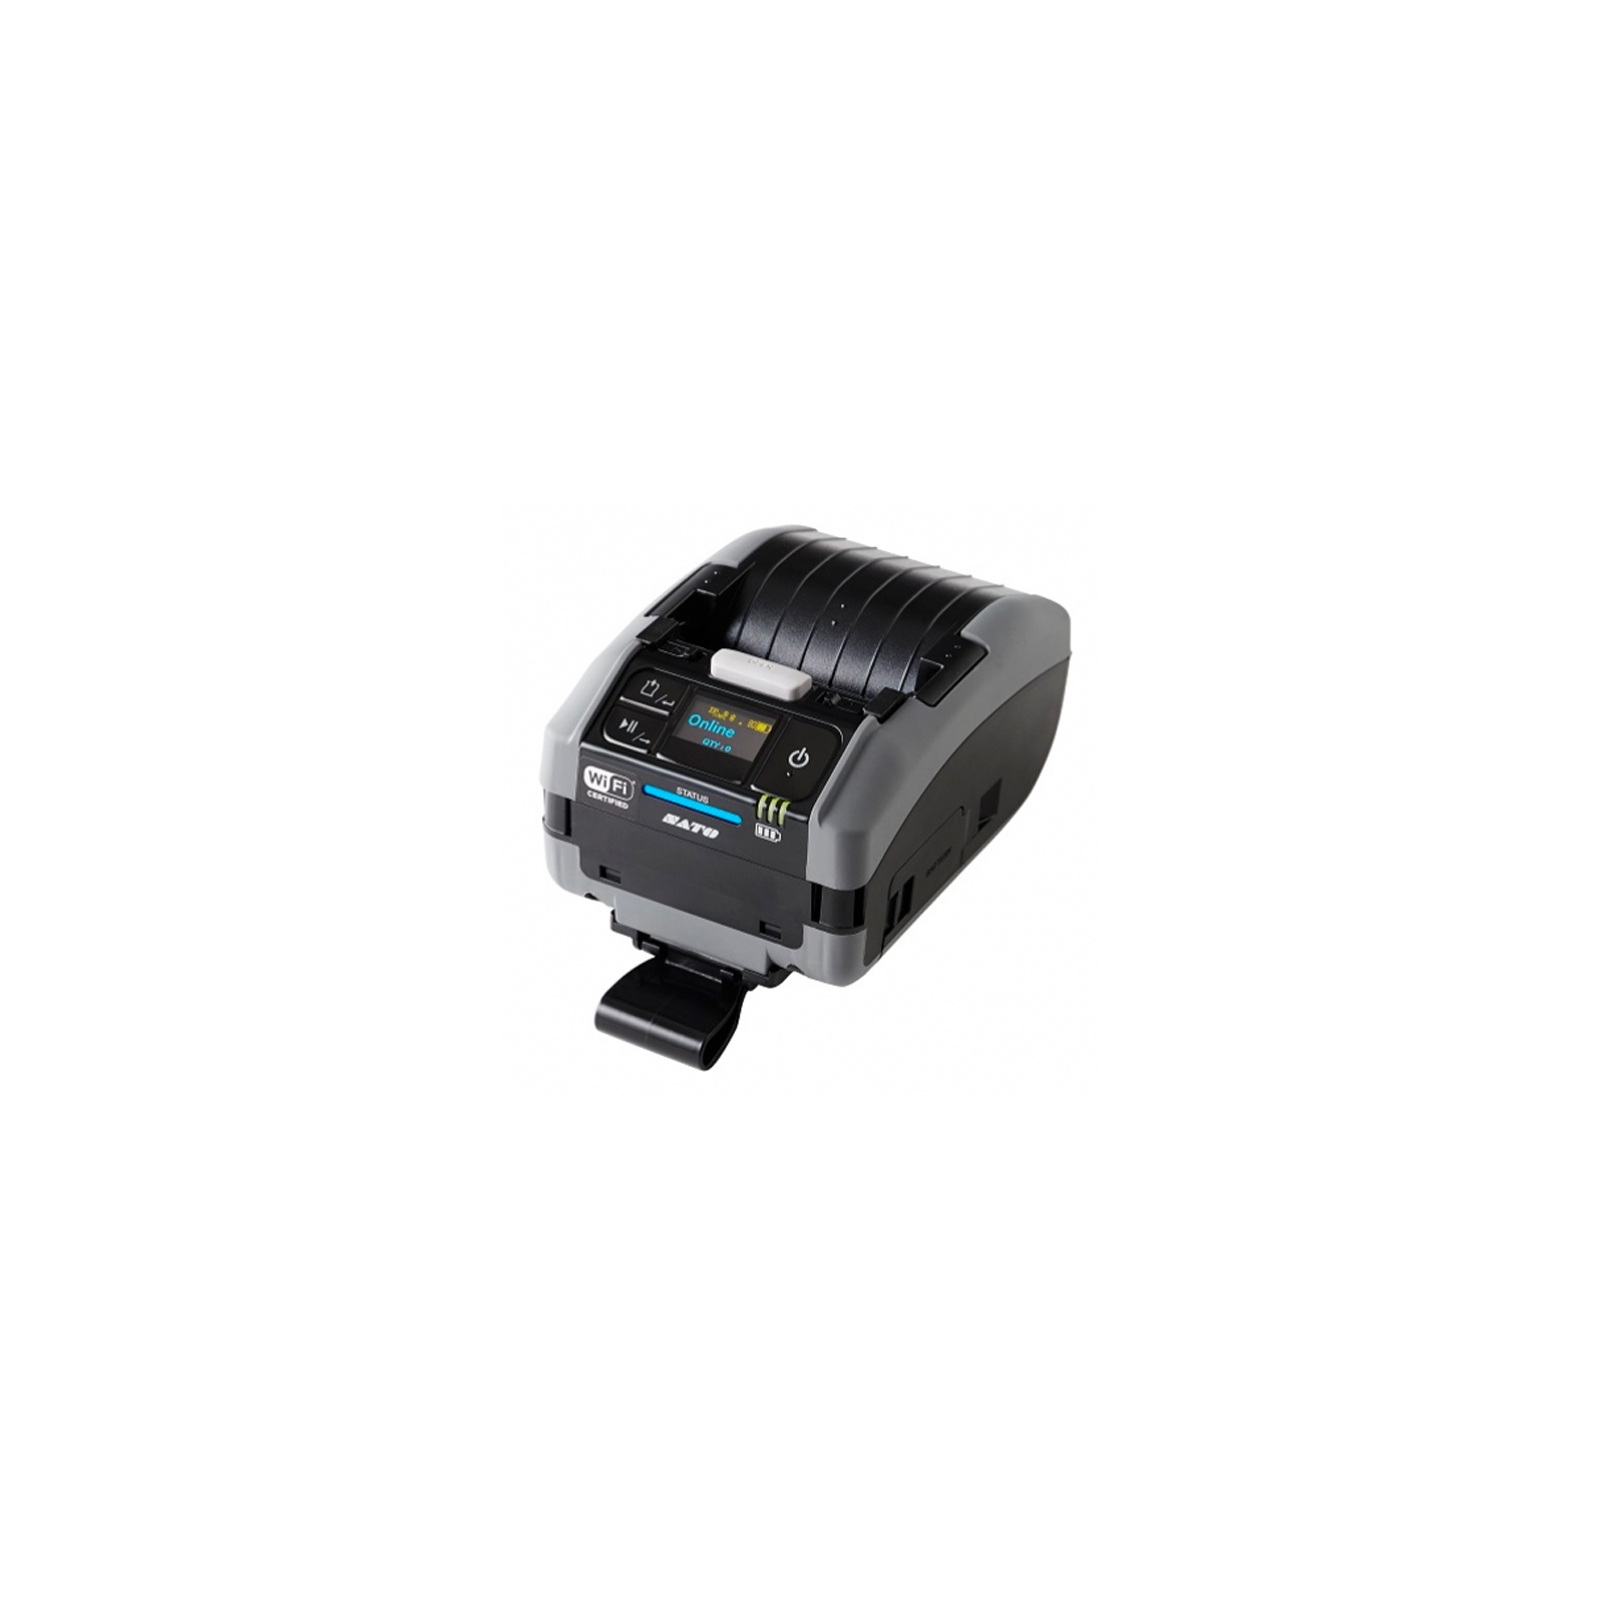 Принтер етикеток Sato PW208NX портативний, USB, Bluetooth, WLAN, Dispenser (WWPW2308G)